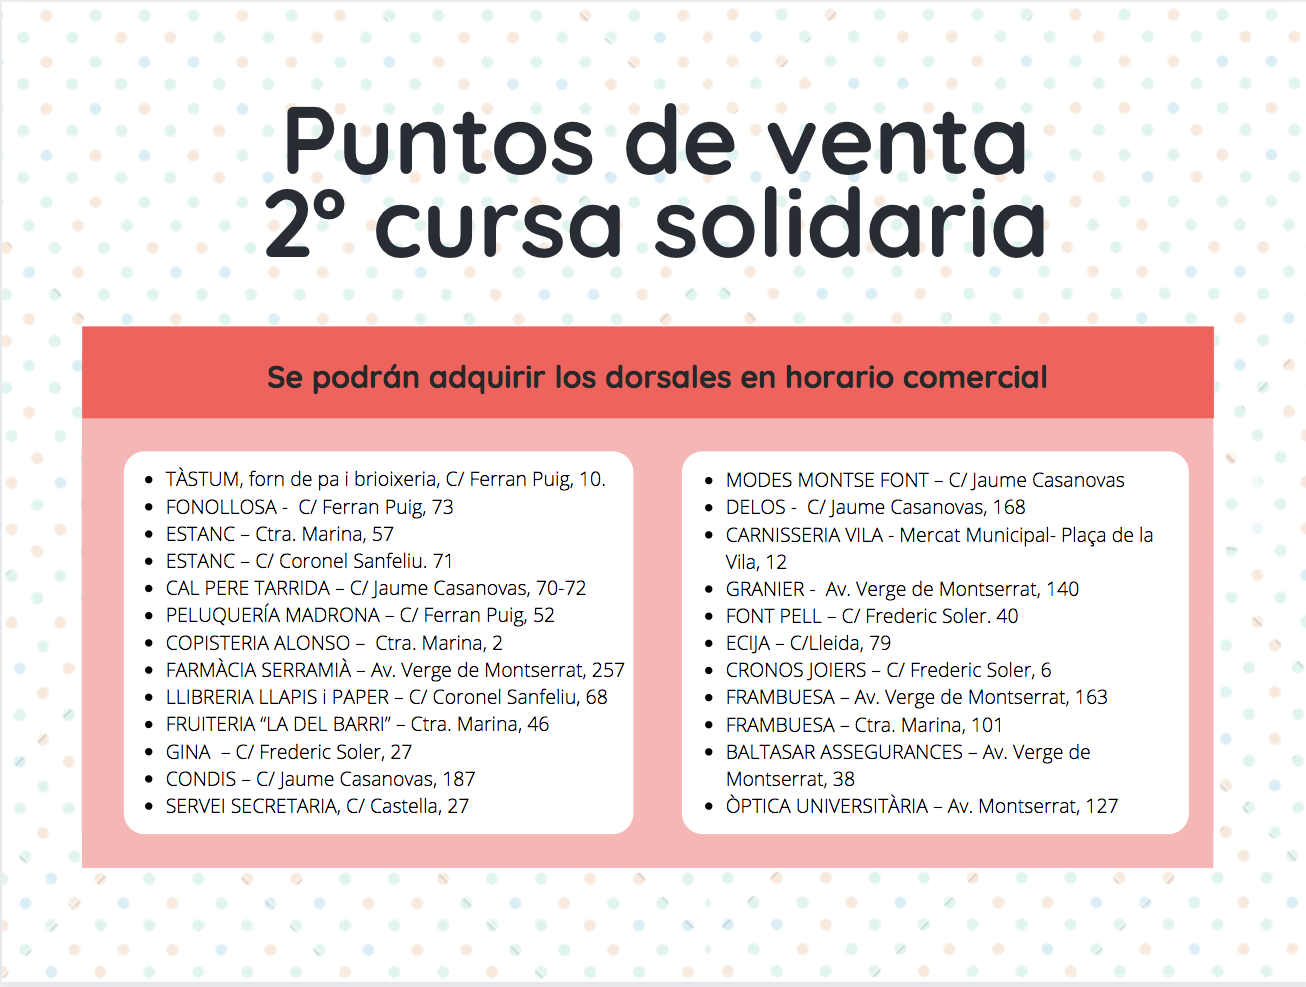 La segunda cursa solidaria de El Prat será virtual por las restricciones del covid-19